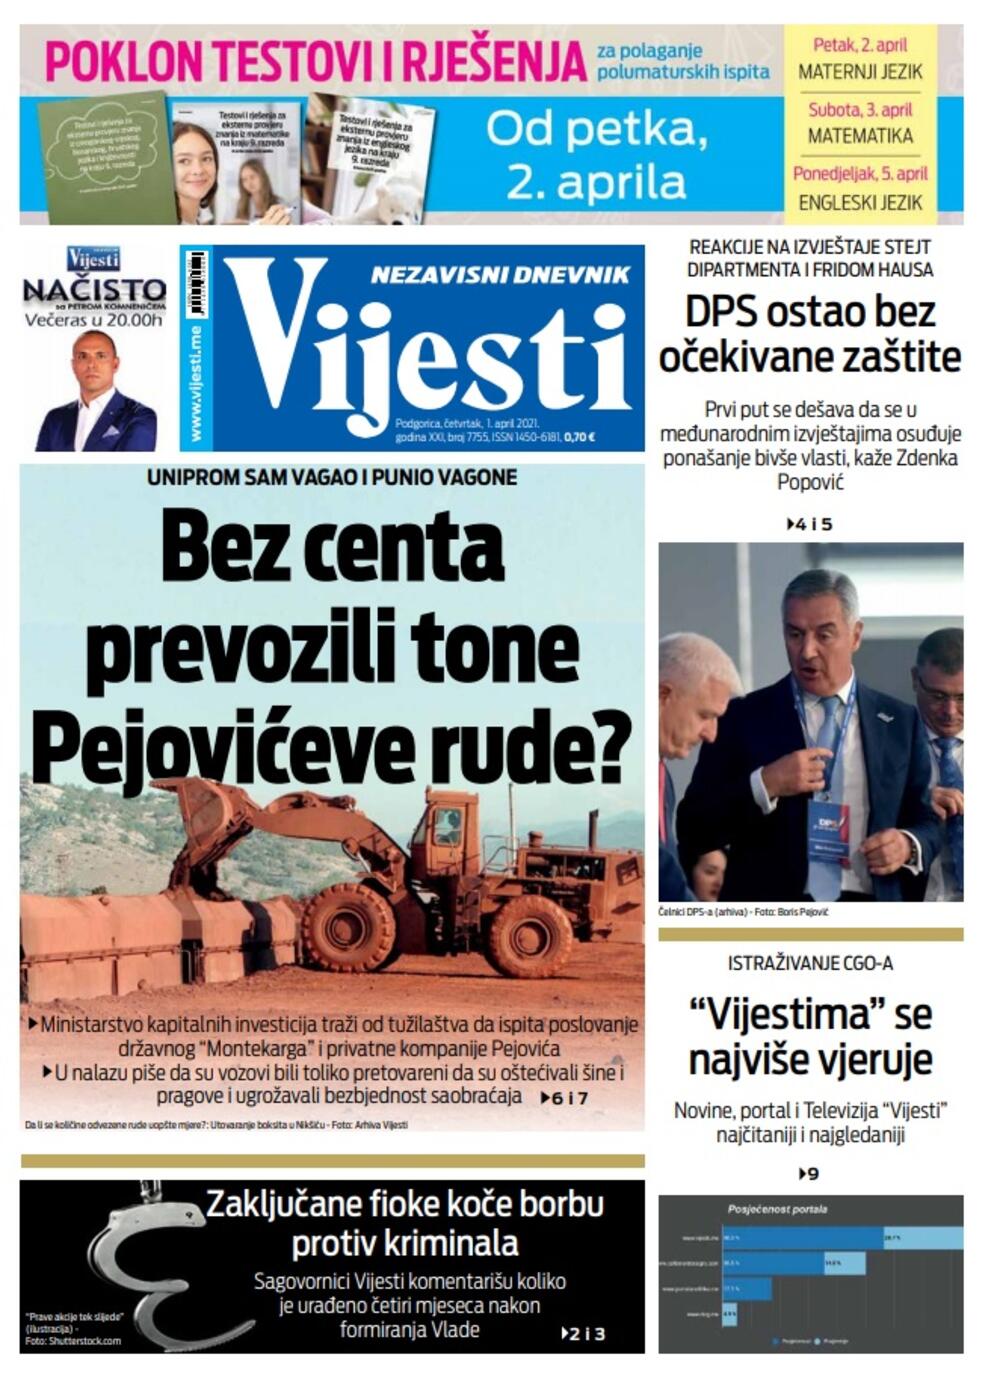 Naslovna strana "Vijesti" za četvrtak 1. april 2021. godine, Foto: Vijesti